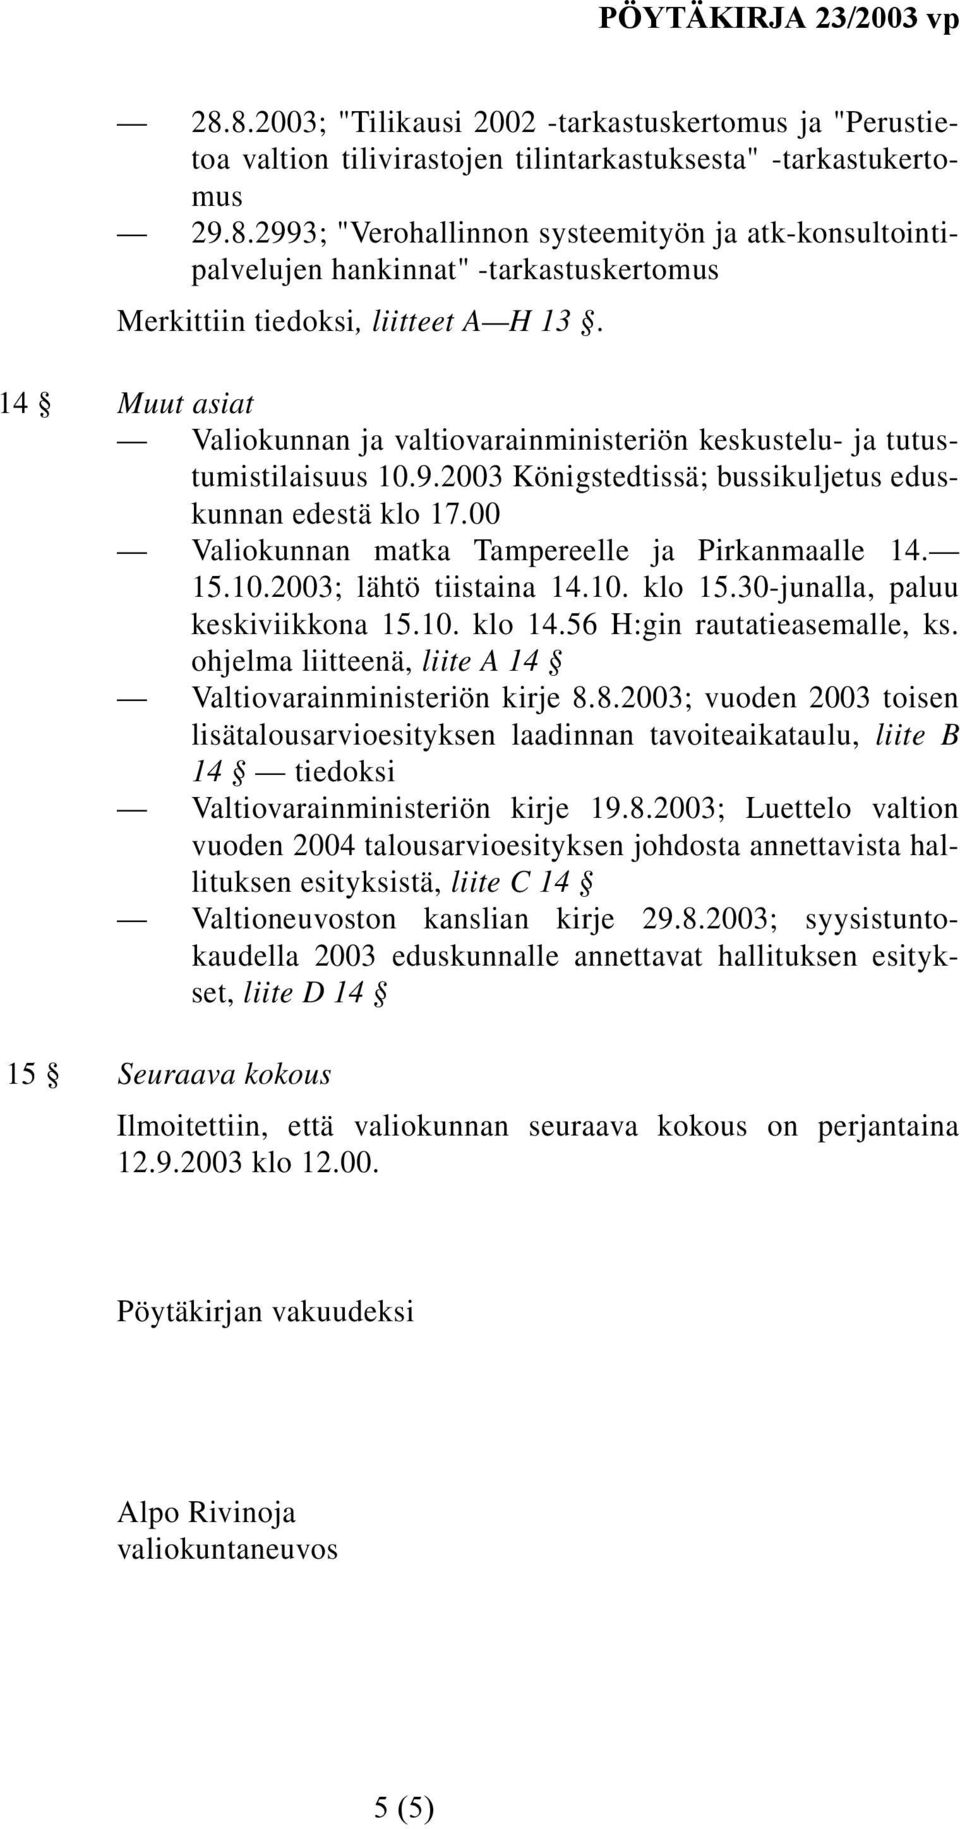 00 Valiokunnan matka Tampereelle ja Pirkanmaalle 14. 15.10.2003; lähtö tiistaina 14.10. klo 15.30-junalla, paluu keskiviikkona 15.10. klo 14.56 H:gin rautatieasemalle, ks.